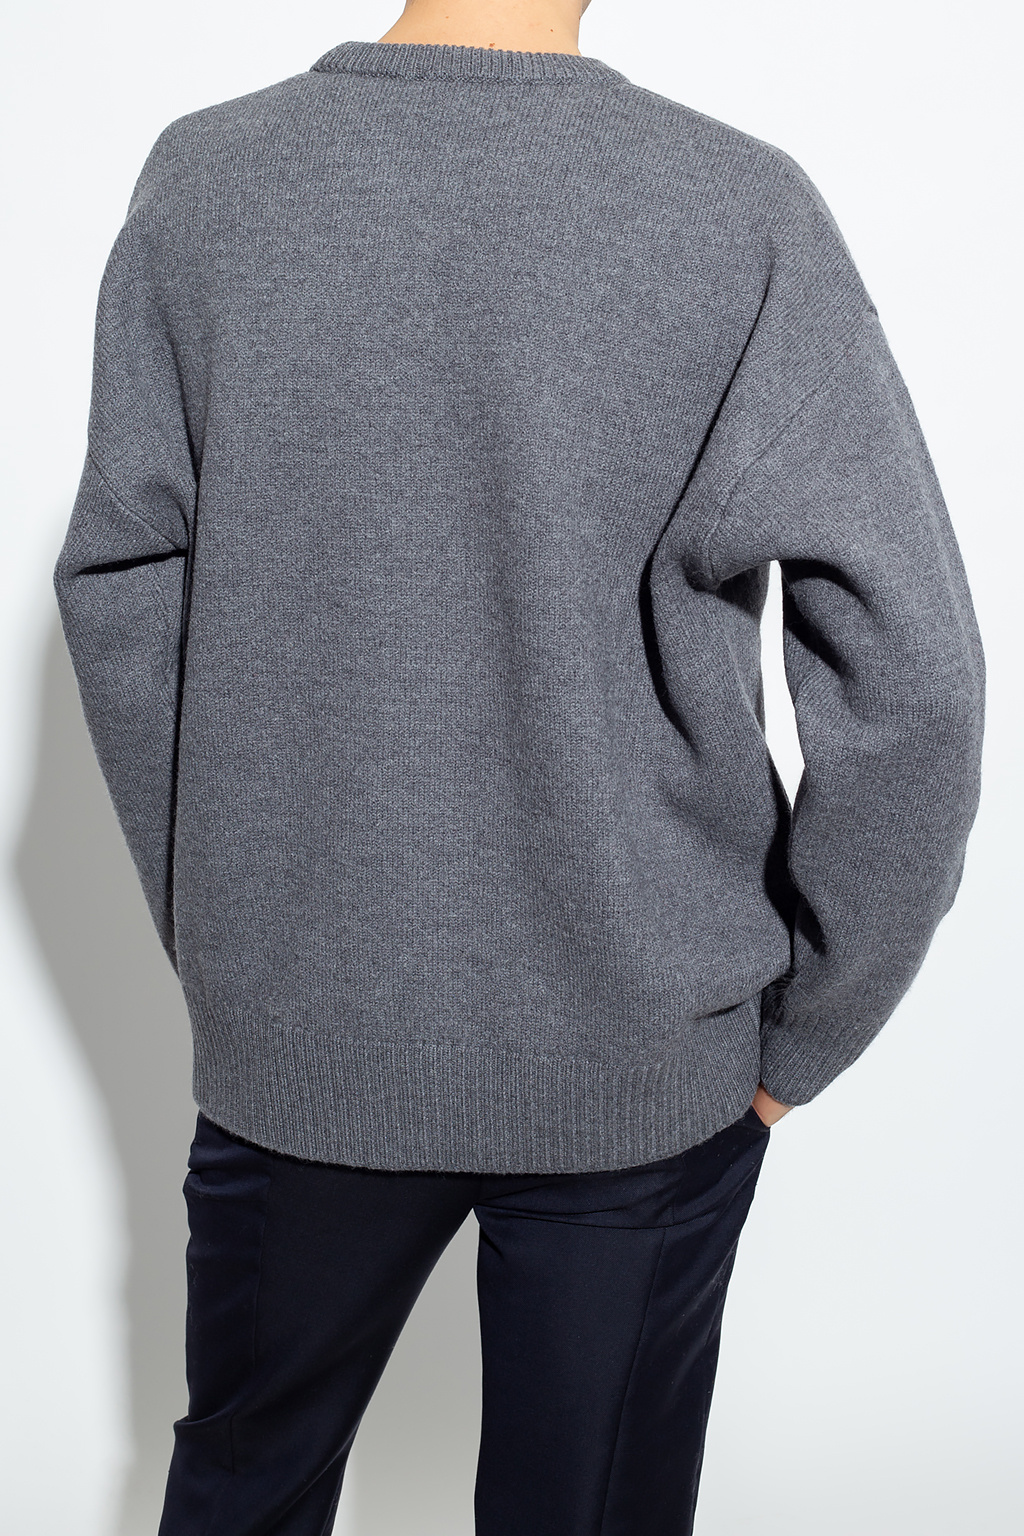 Wool Ferragni sweater Ami Alexandre Mattiussi - GenesinlifeShops 